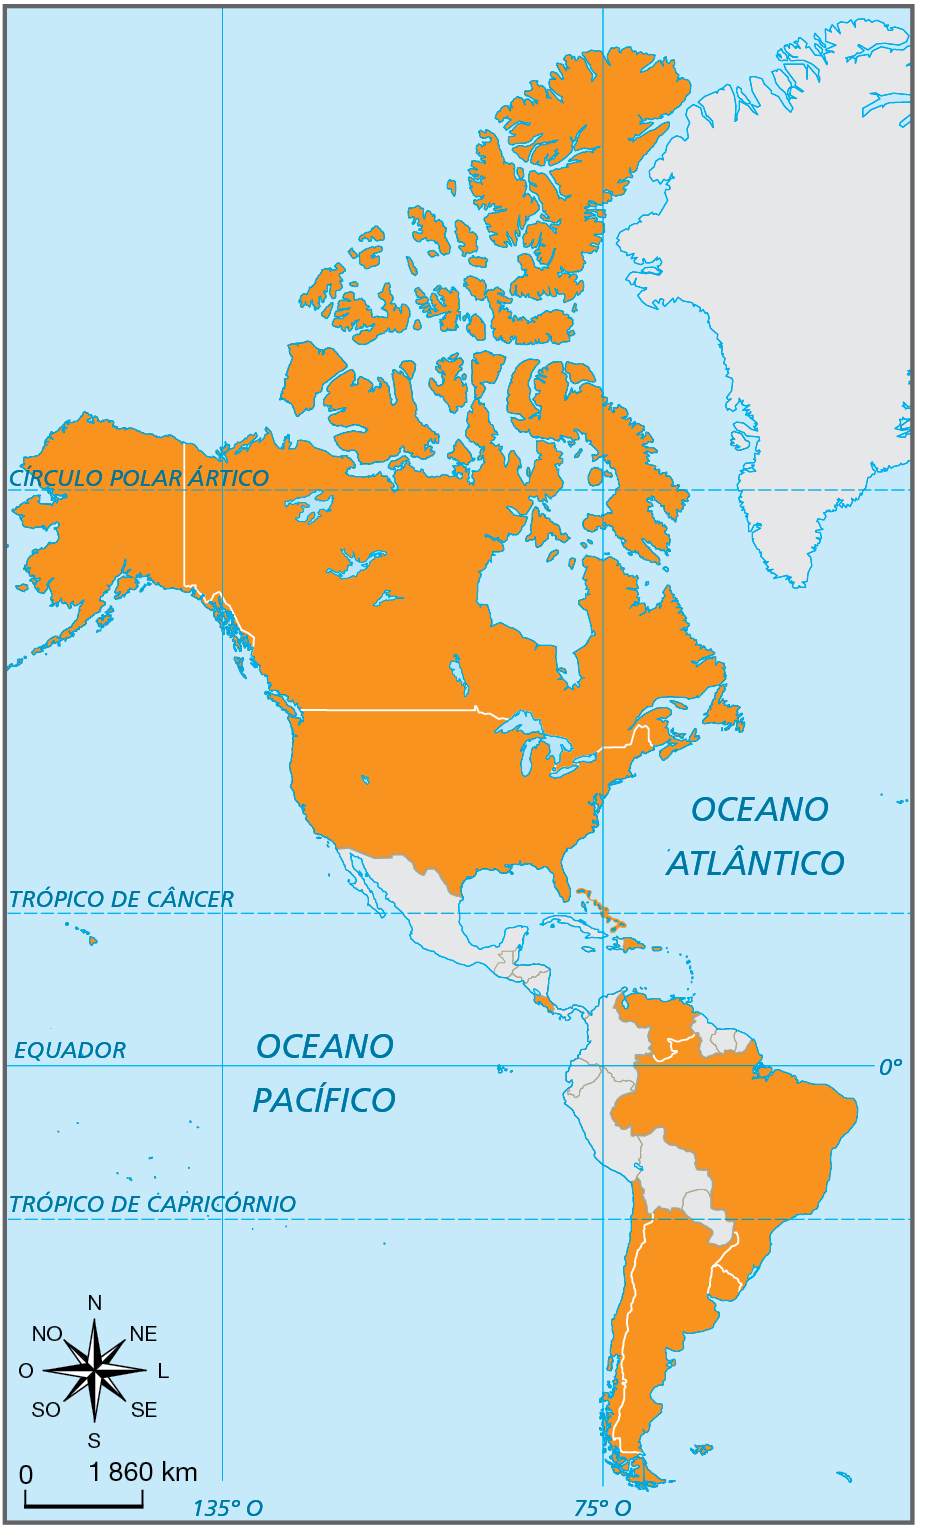 Mapa. Mapa do continente americano indicando os países com população urbana superior à 80%. 
Canadá, Estados Unidos, Barramas, República Dominicana, Porto Rico, Costa Rica, Venezuela, Brasil, Ururguai, Argentina, Chile. 
Na parte inferior, rosa dos ventos e escala de 0 a 1.860 quilômetros.